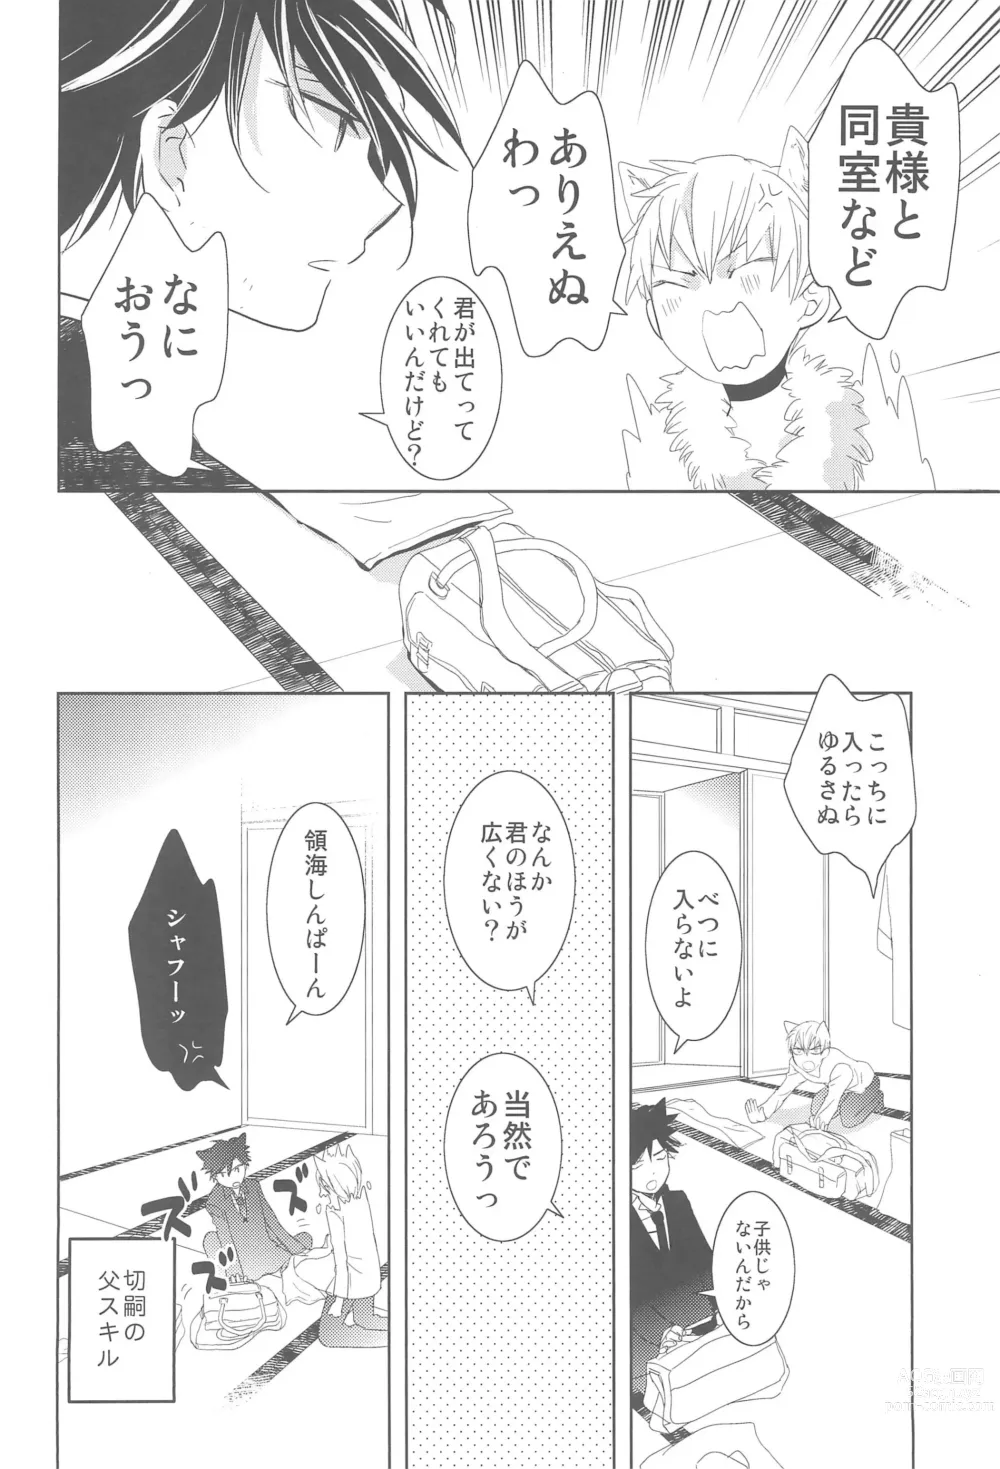 Page 10 of doujinshi Omise no Neko 3.5